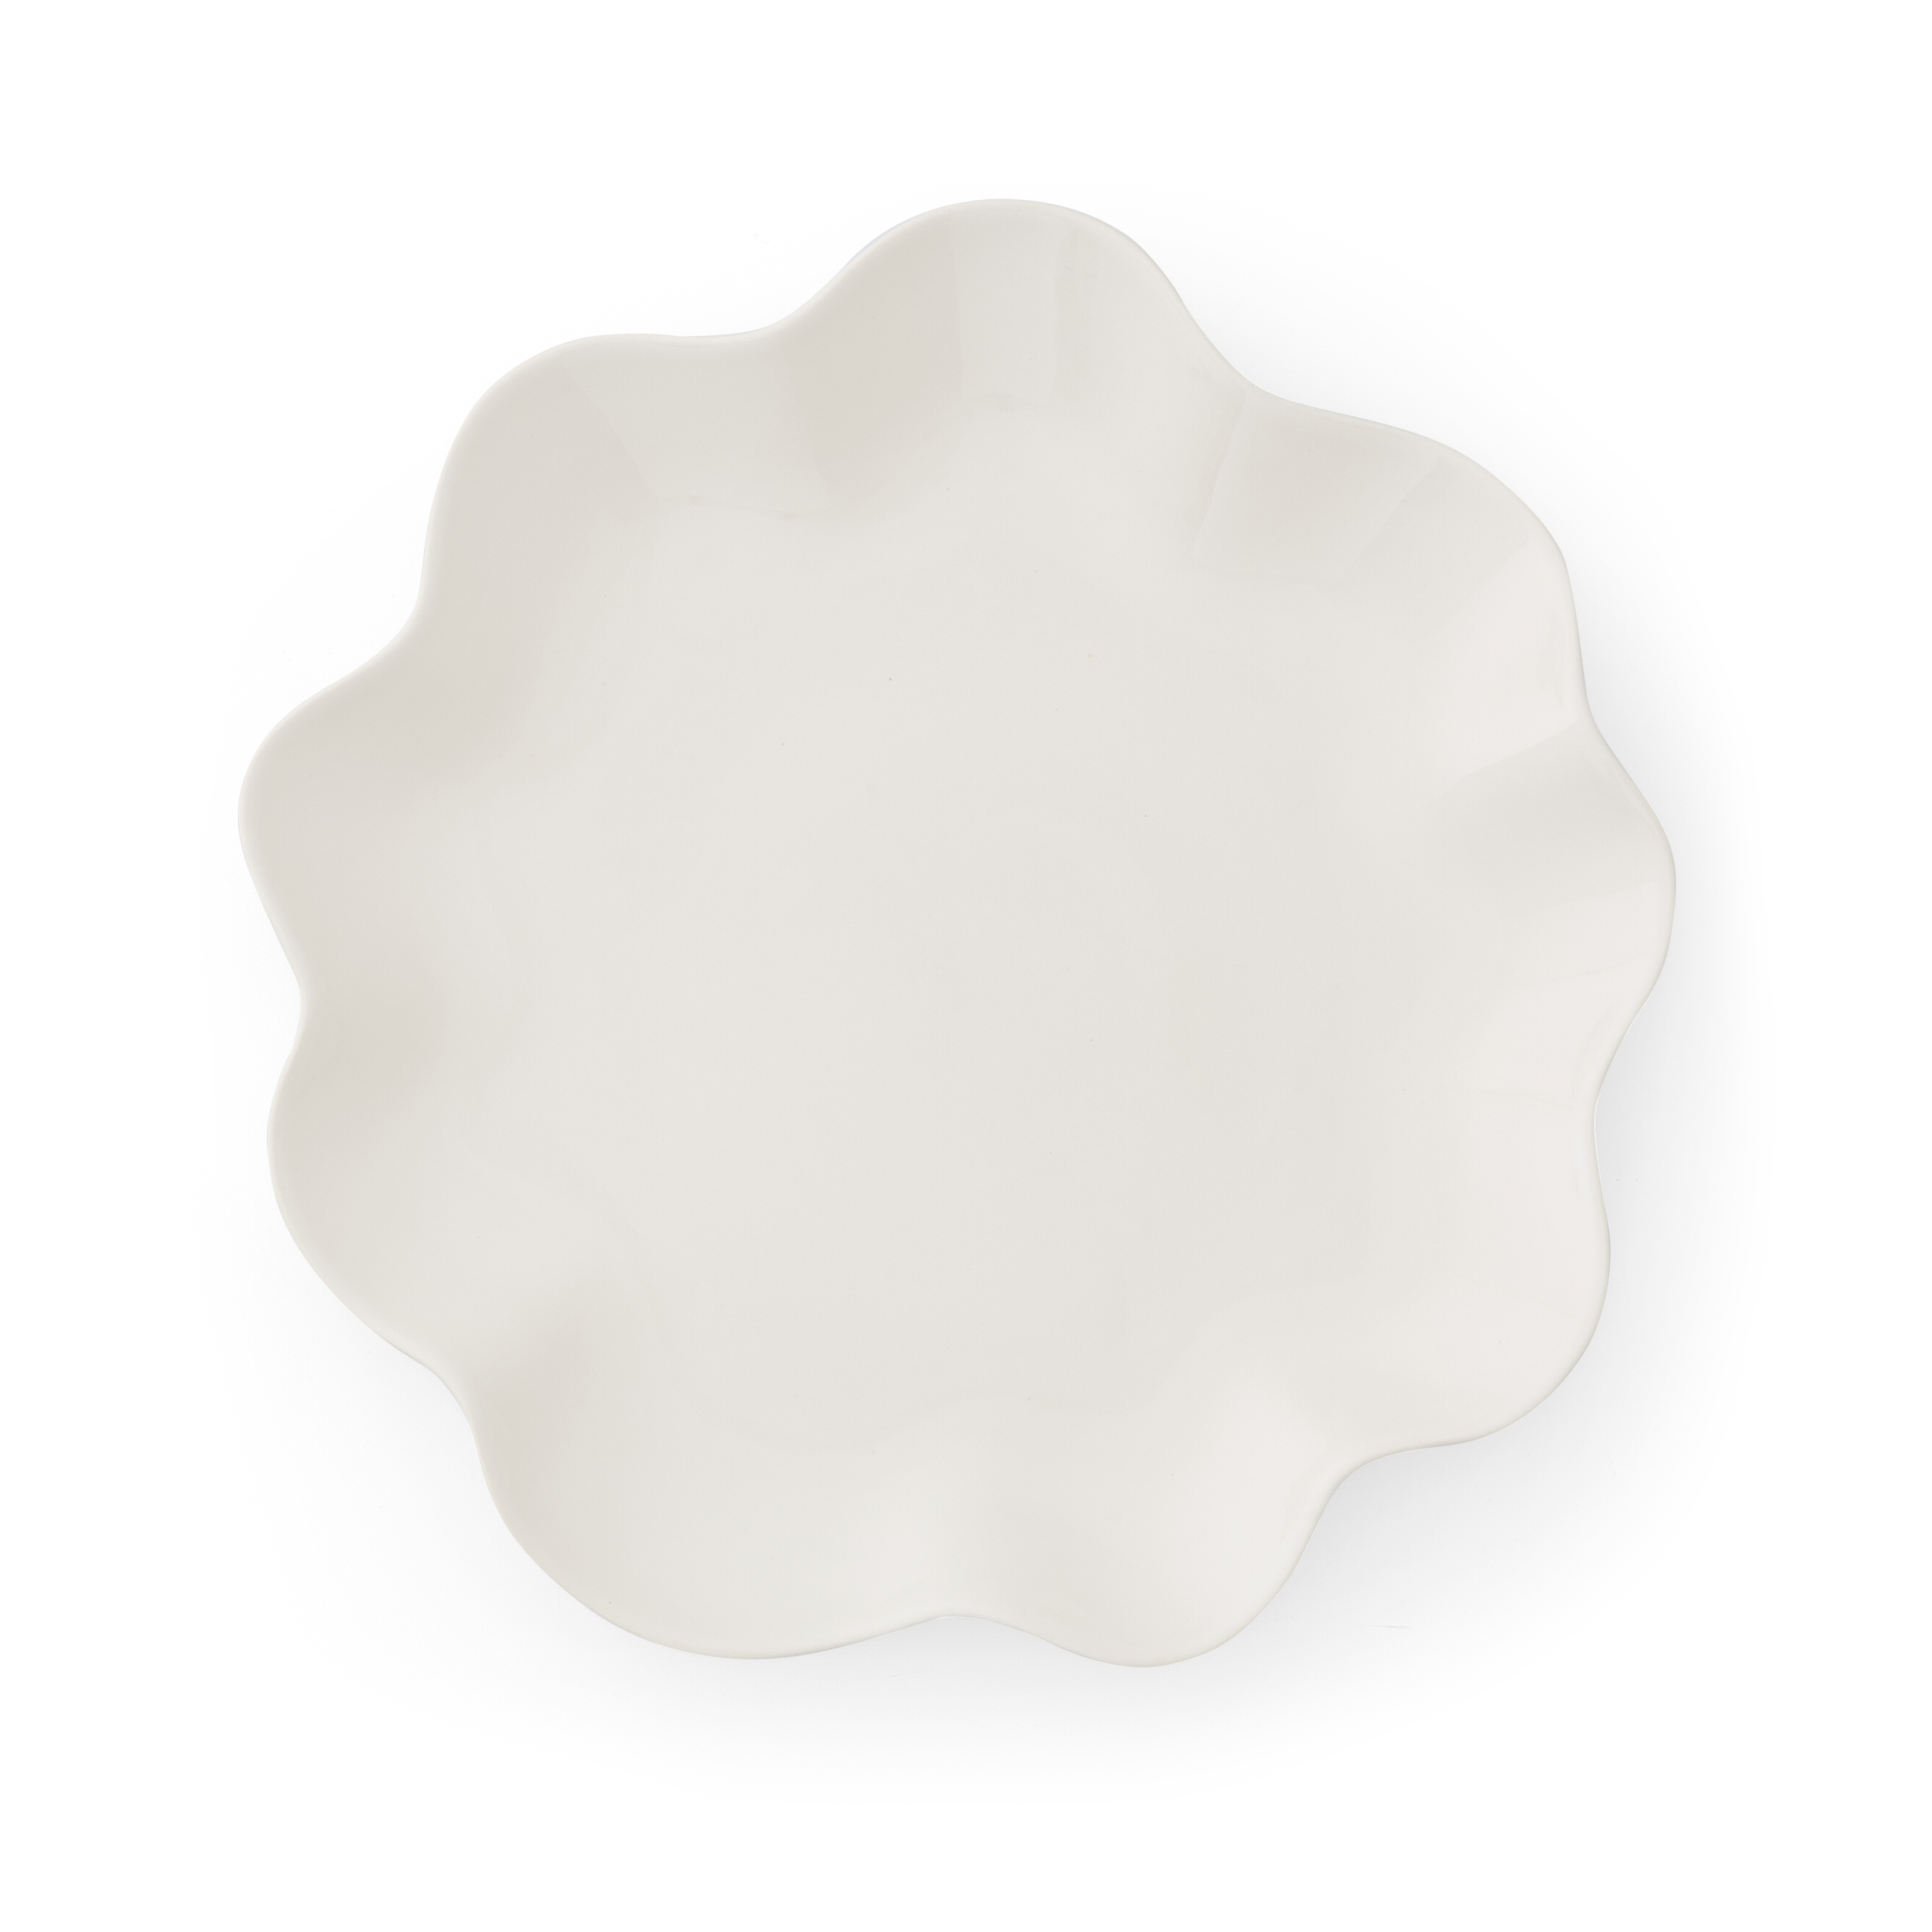 Sophie Conran Floret Large Serving Platter, Cream image number null